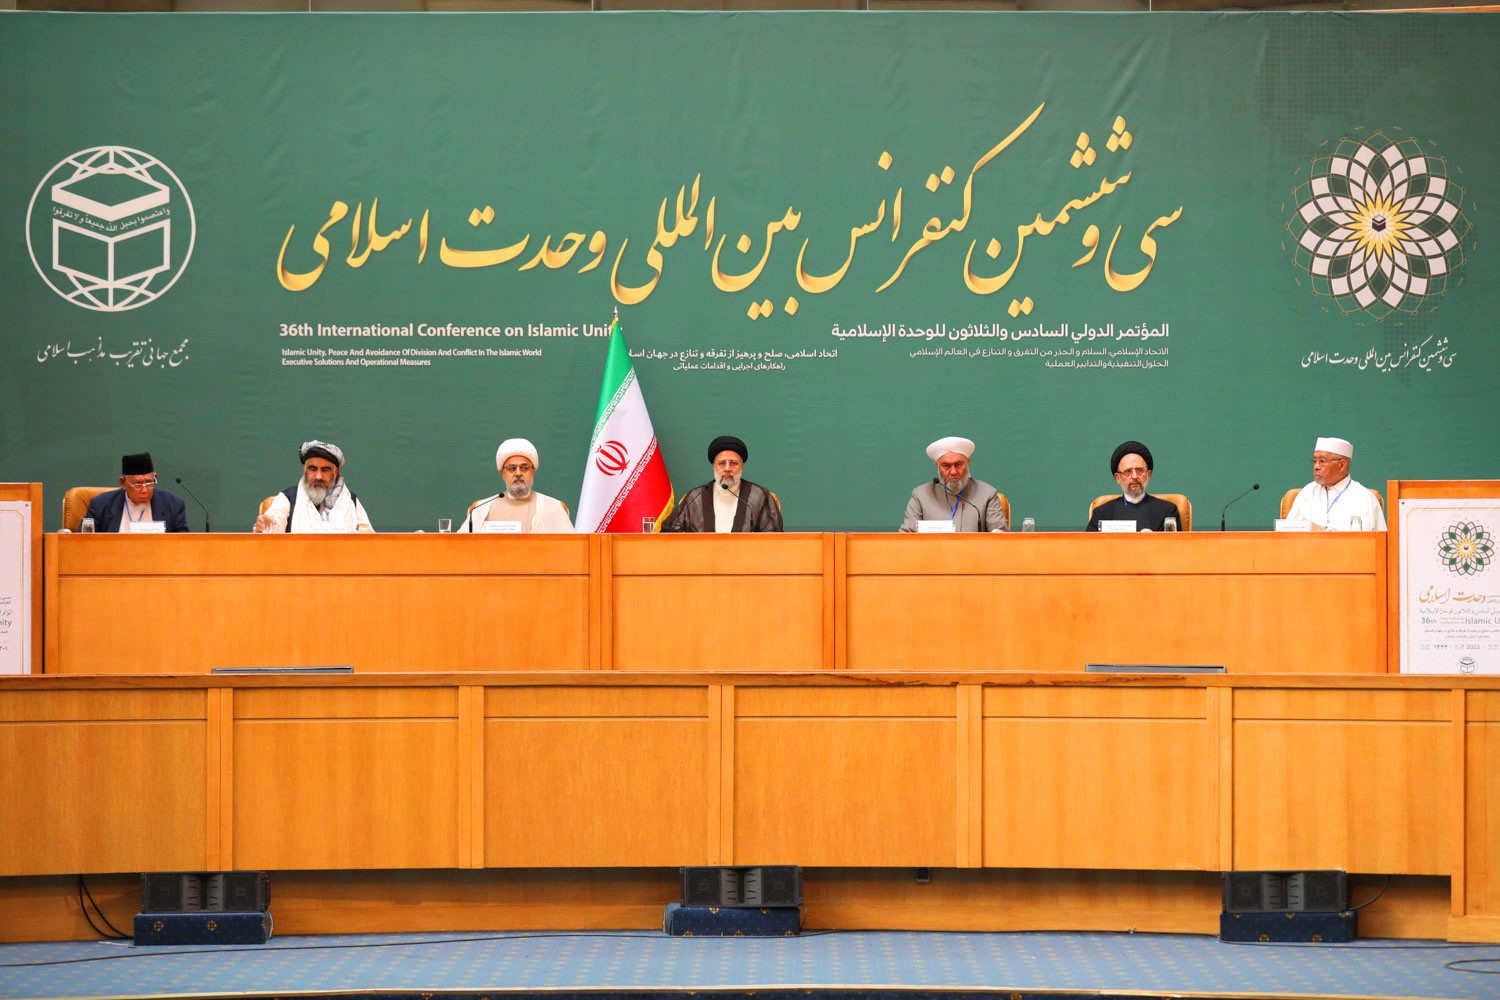 رئيسي : مؤتمر الوحدة الإسلامية يحث النخب الاسلامية على الحوار